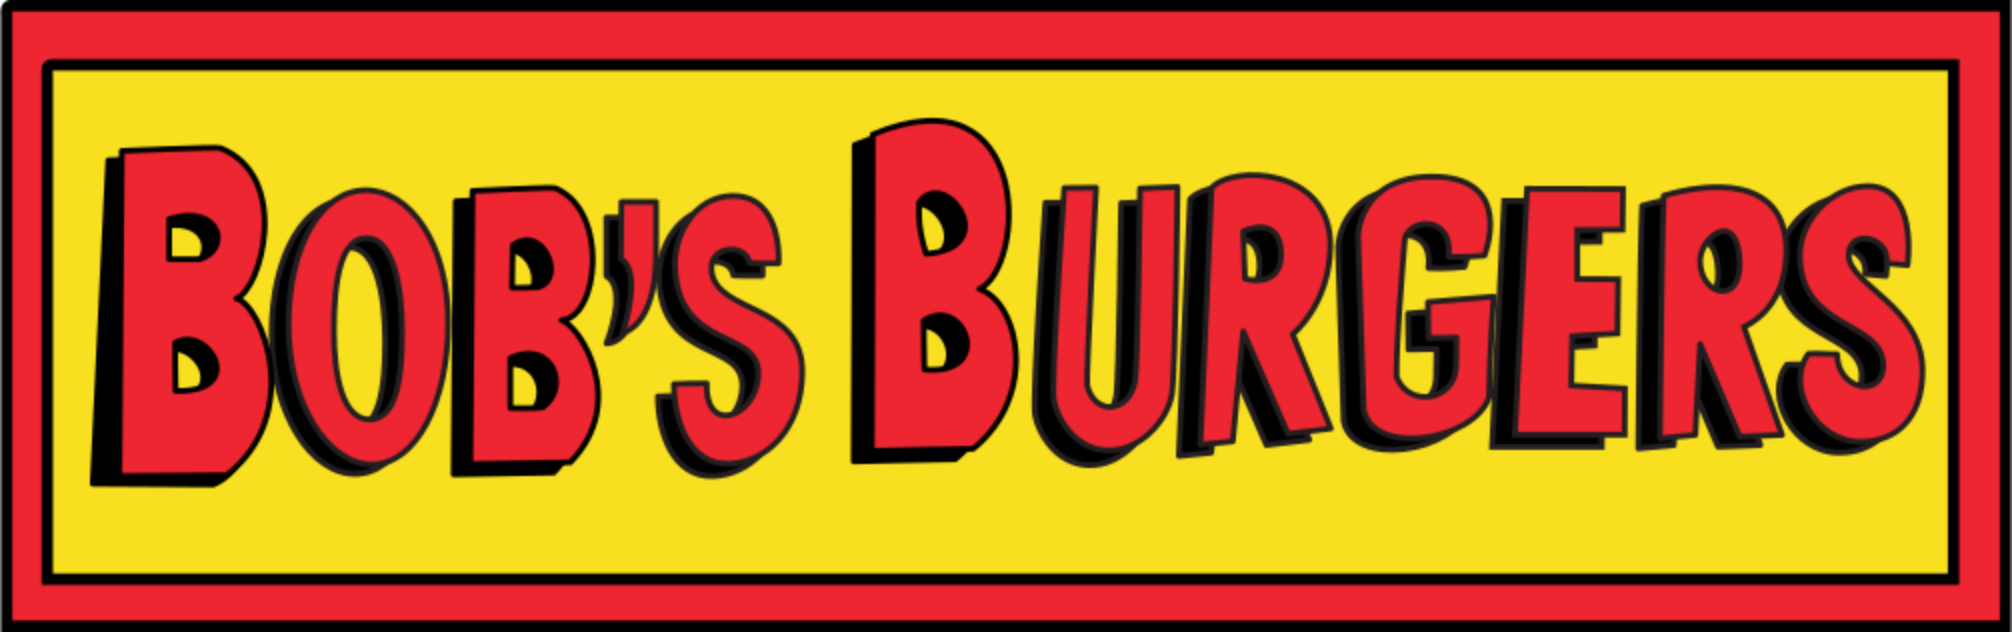 Bob's Burgers (23 DVDs Box Set)